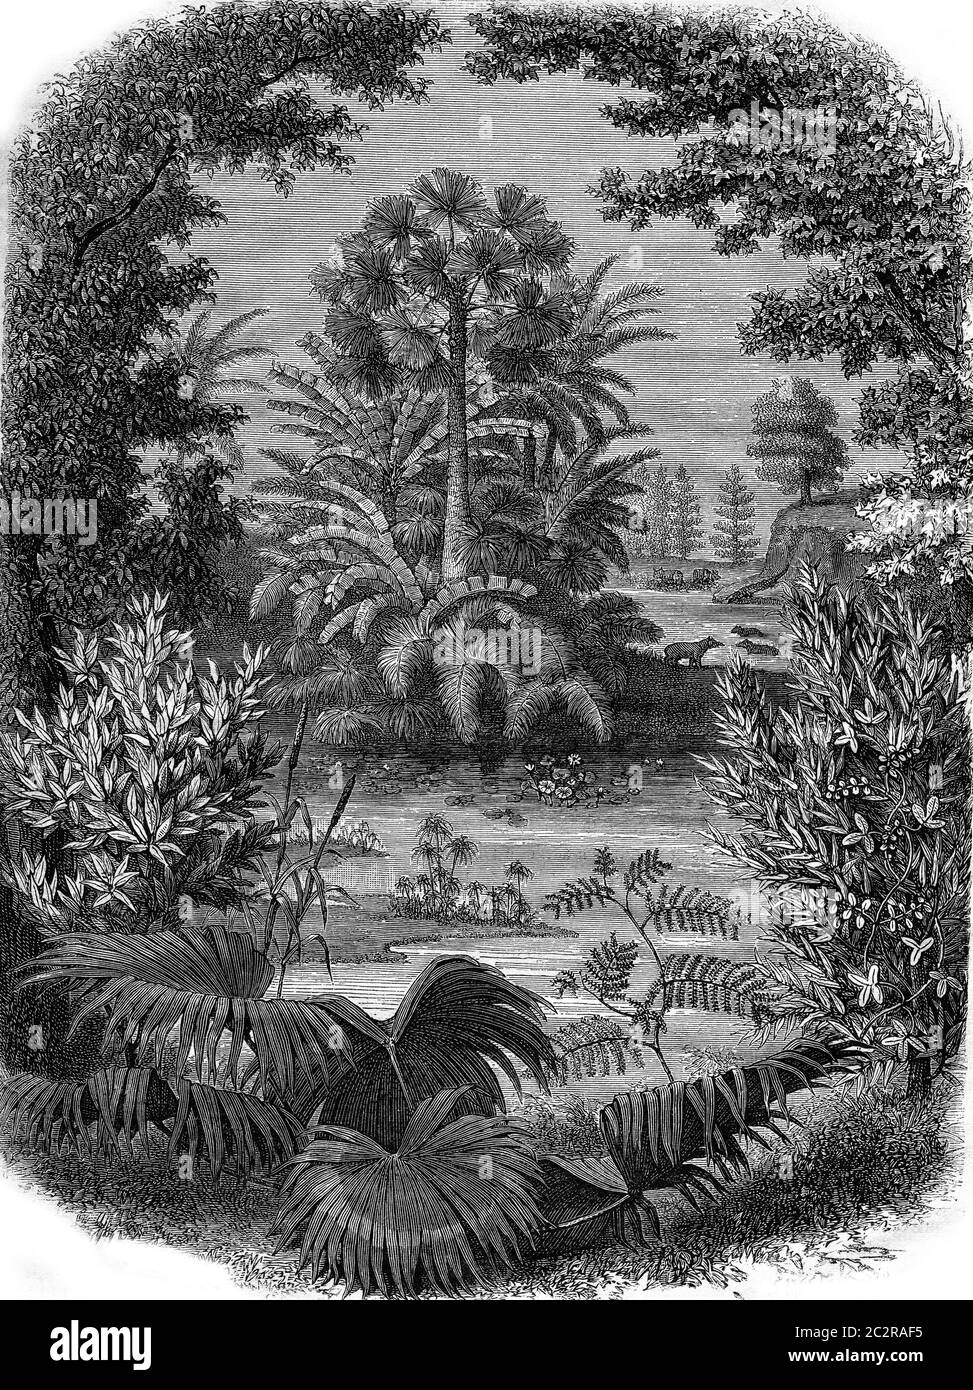 Eine Landschaft der Miozän-Epoche, Vintage gravierte Illustration. Magasin Pittoresque 1876. Stockfoto